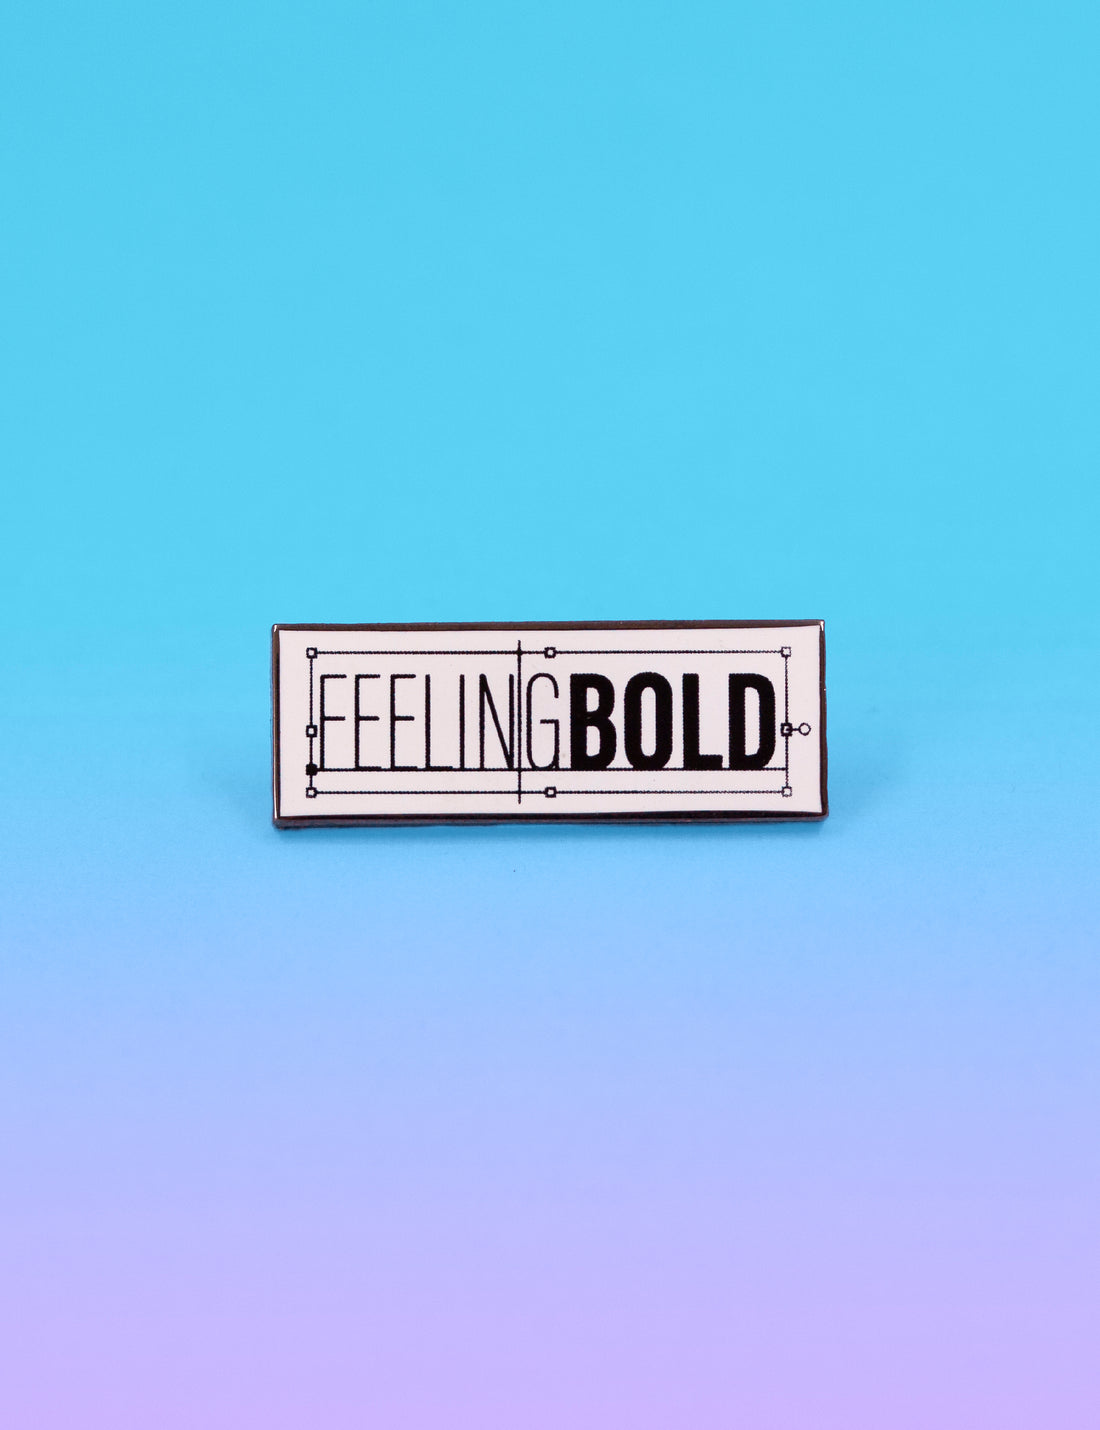 Feeling bold pin